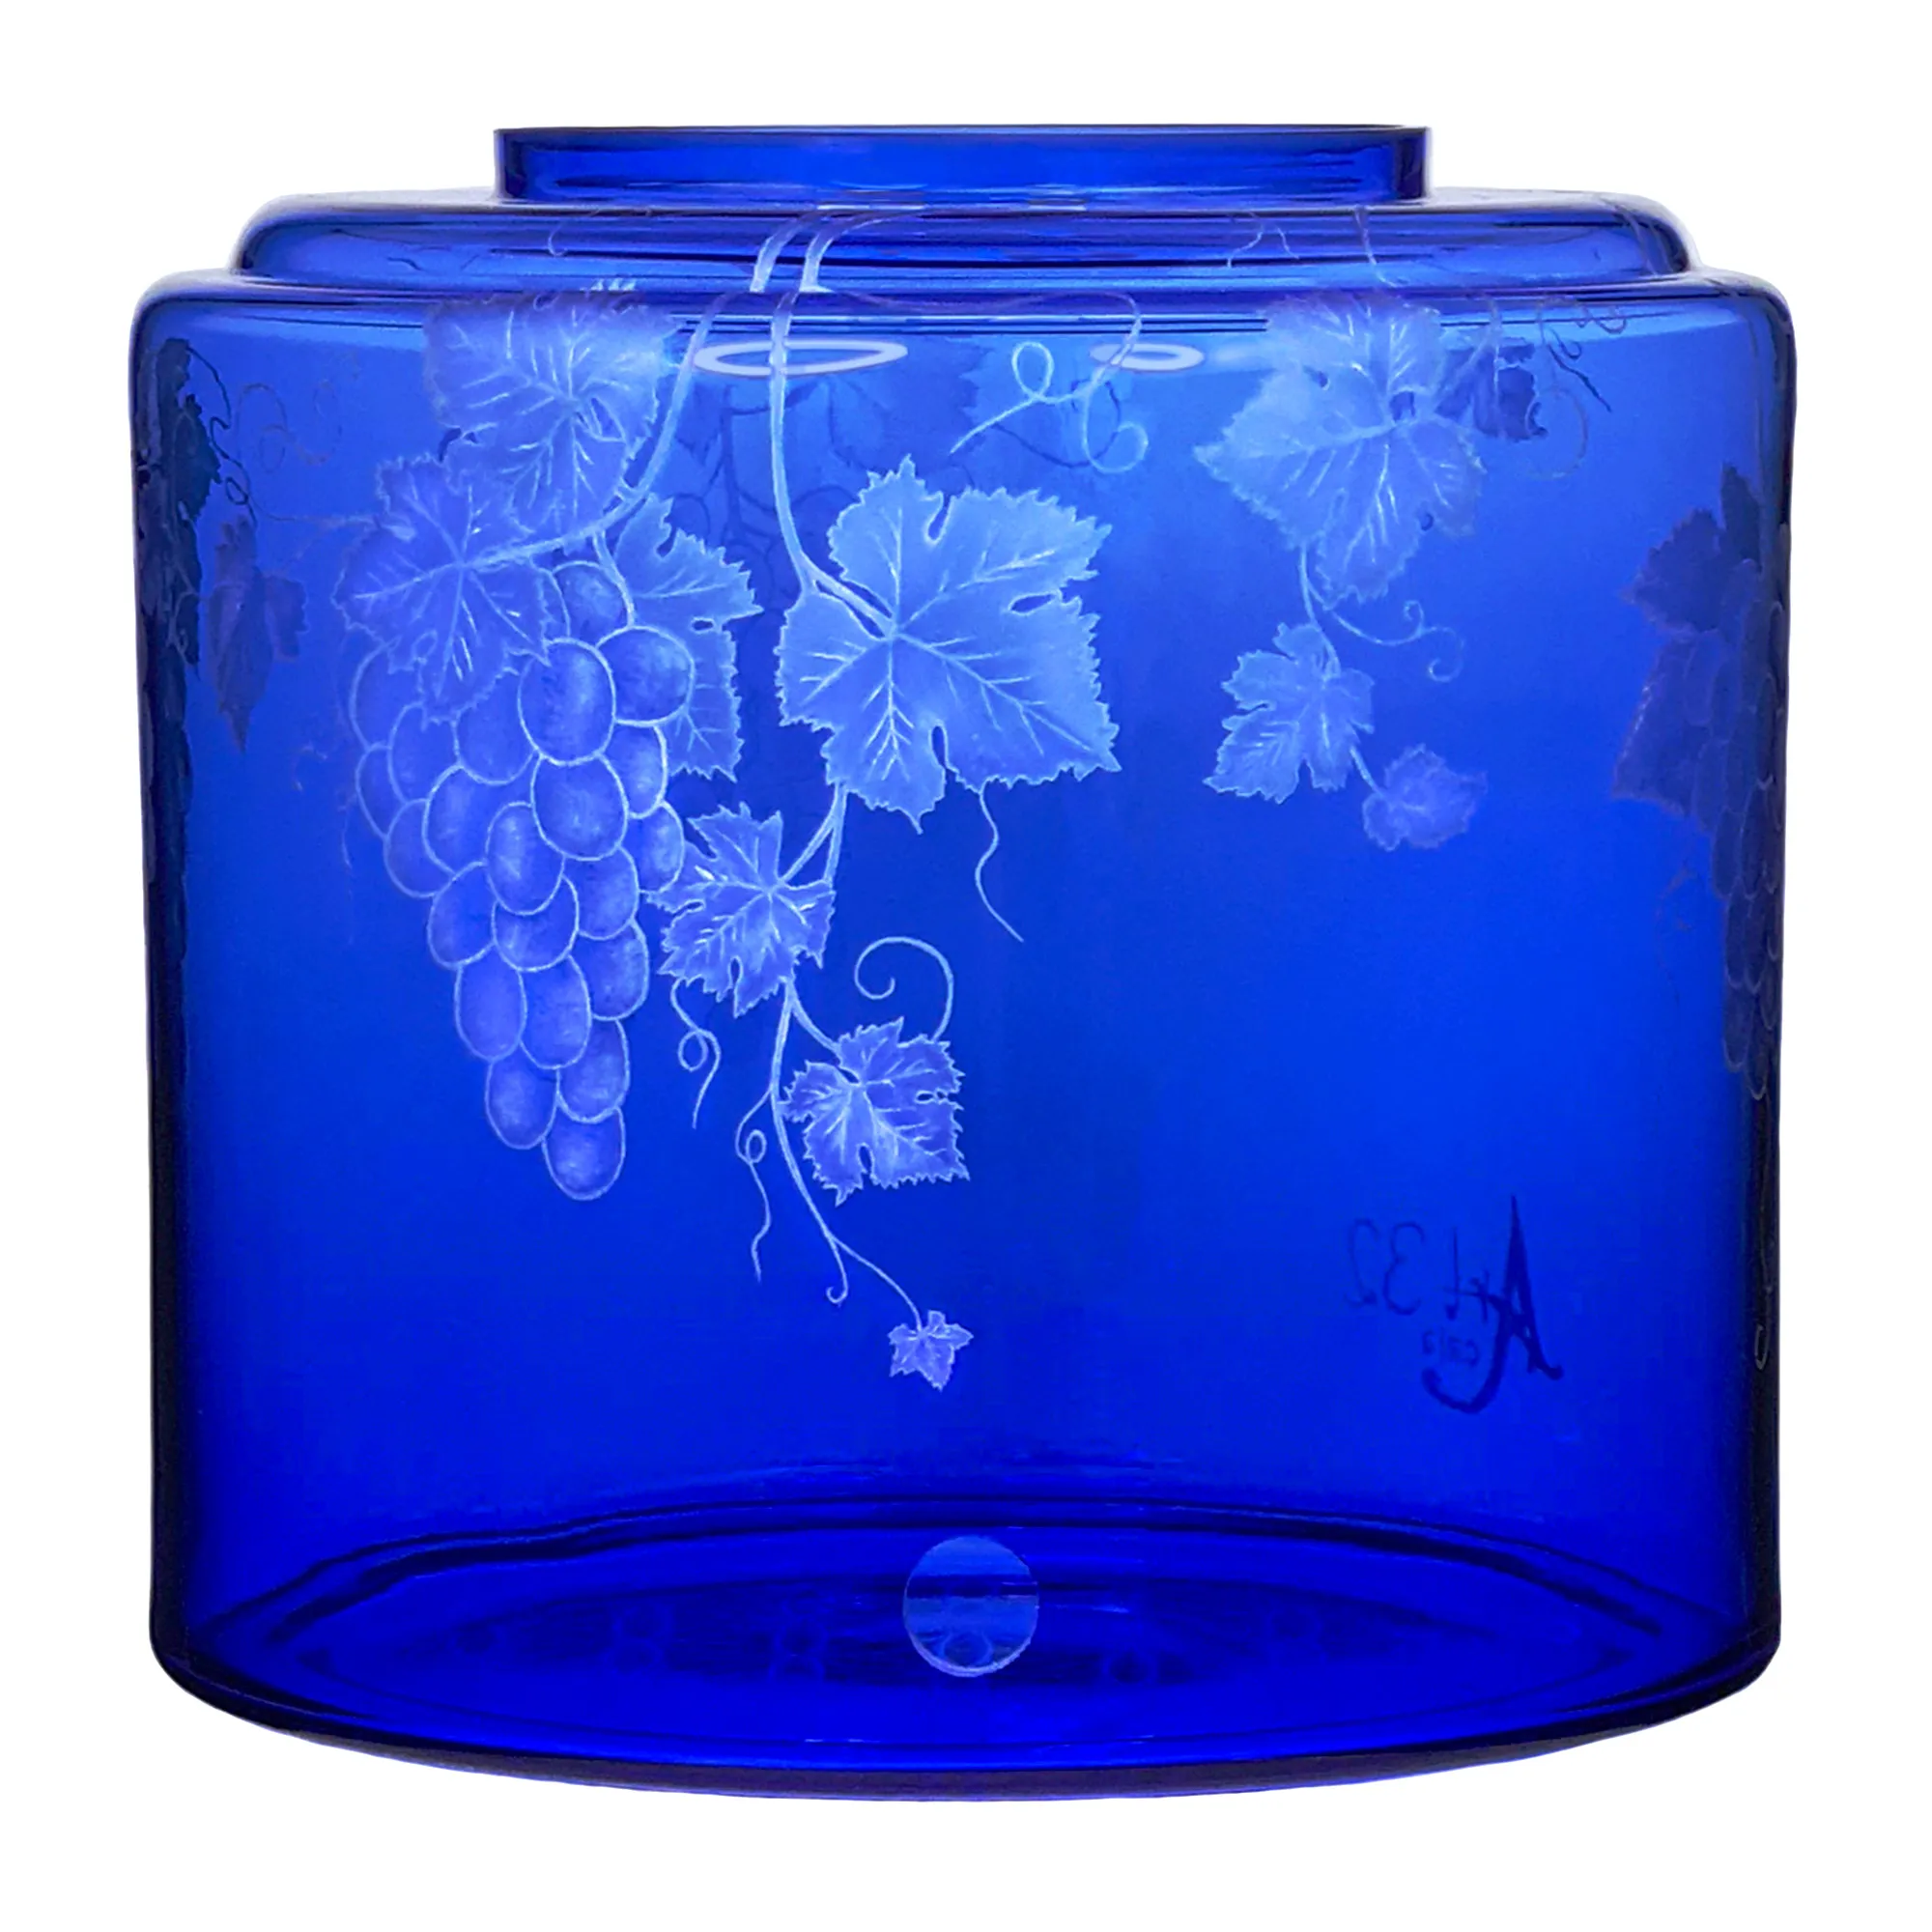 Vorratstank für einen Acala Wasserfilter Mini mit einer Handgravur. Die Gravur zeigt, auf blauem Glas, Traubenranken und Blätter.Ansicht von vorne.